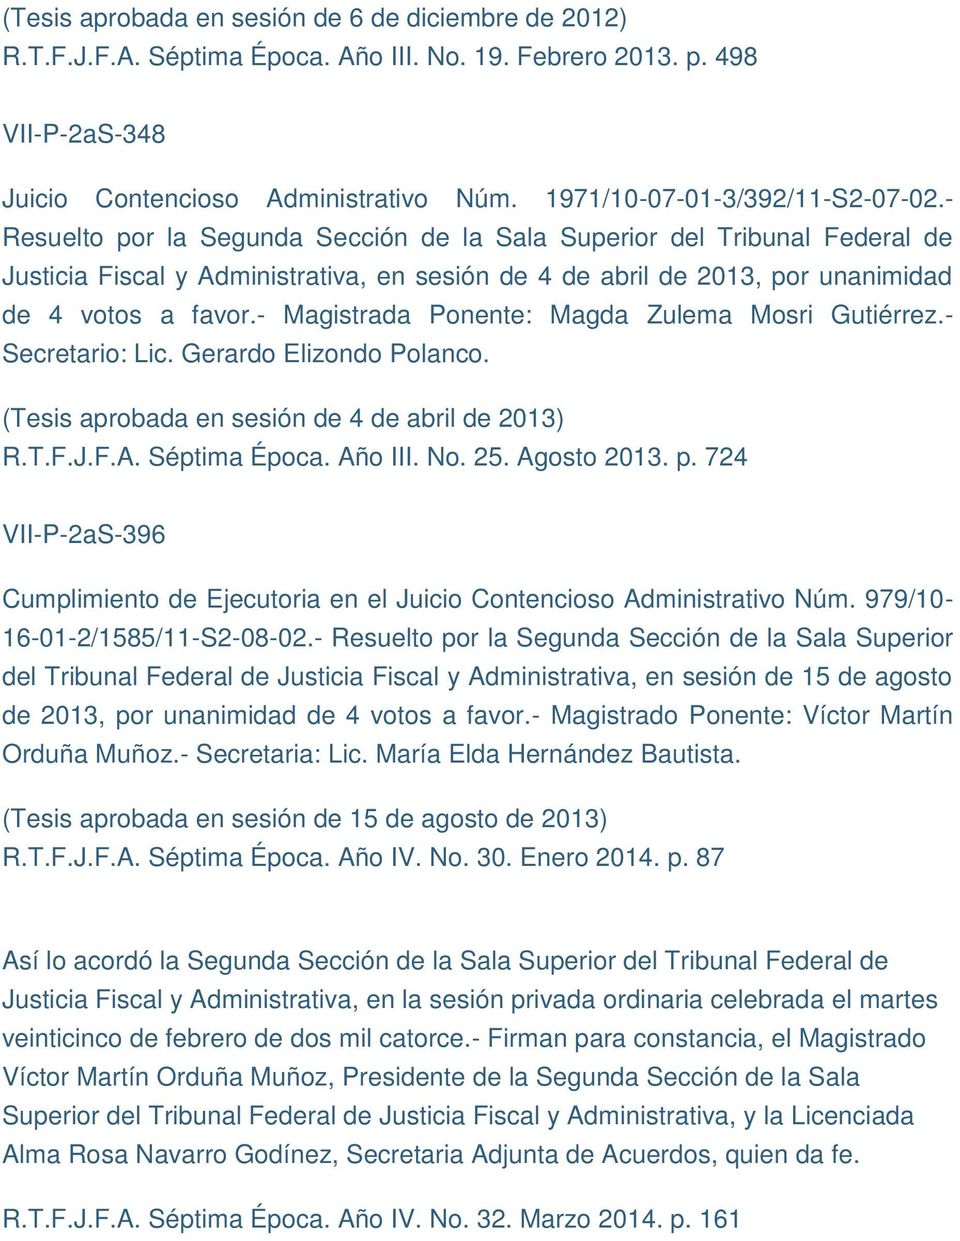 - Secretario: Lic. Gerardo Elizondo Polanco. (Tesis aprobada en sesión de 4 de abril de 2013) R.T.F.J.F.A. Séptima Época. Año III. No. 25. Agosto 2013. p.